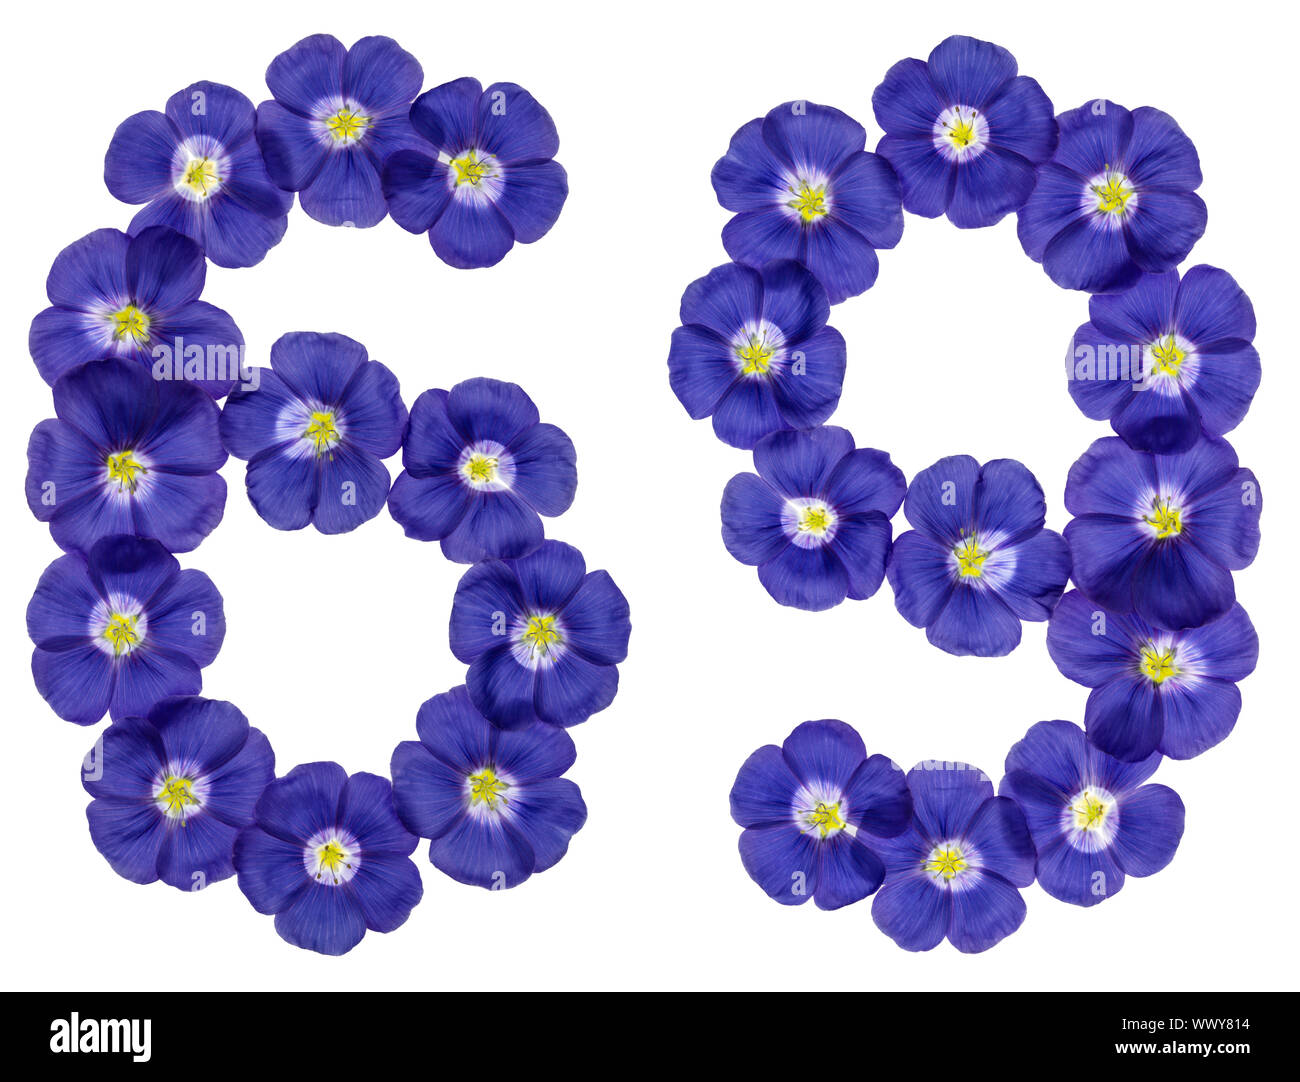 Chiffre arabe 69, soixante-neuf, à partir de fleurs bleues du lin, isolé sur fond blanc Banque D'Images